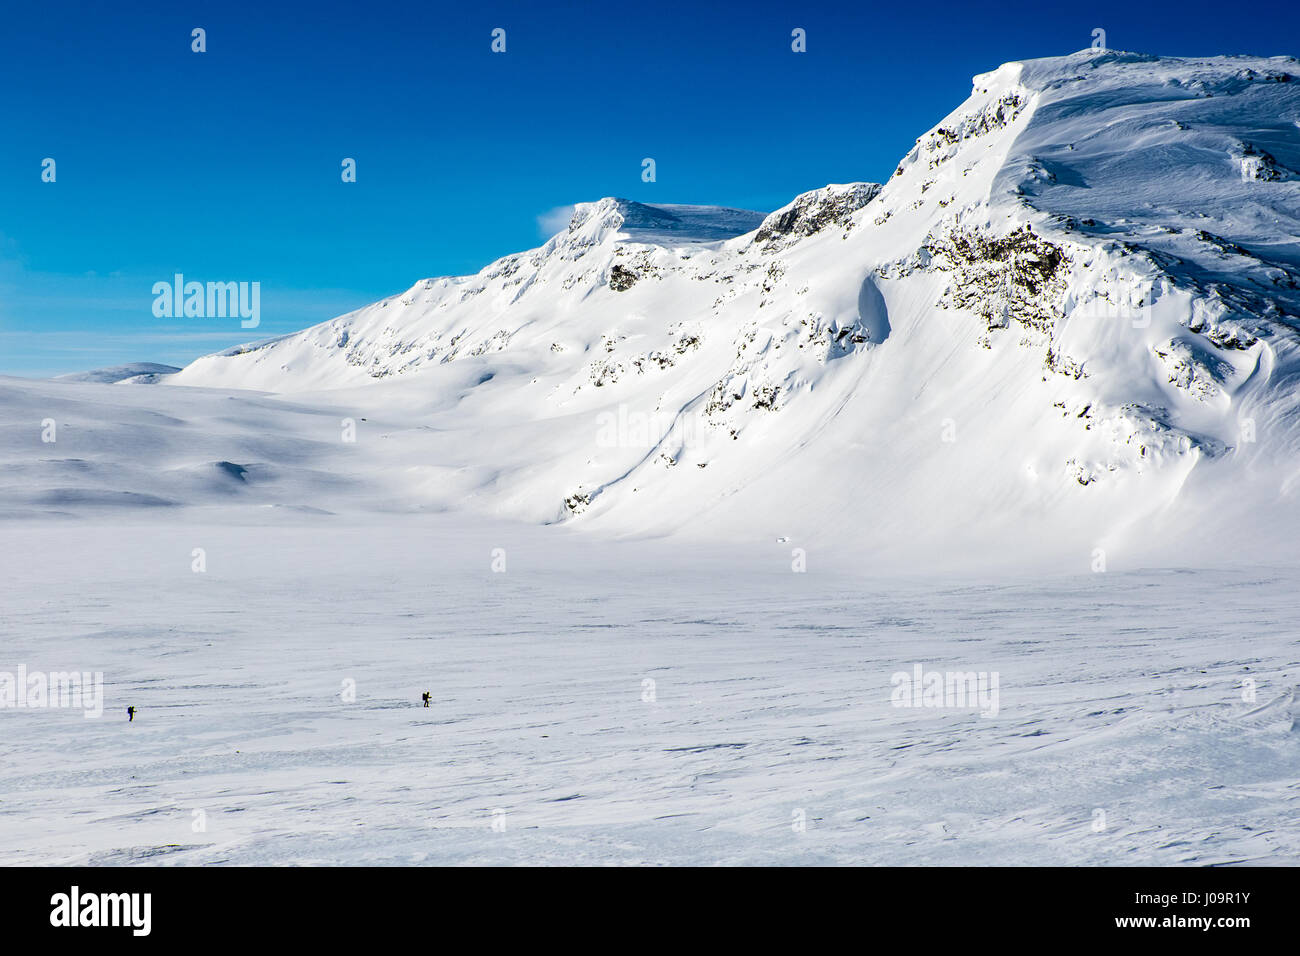 Schneebedeckte Berge, blauer Himmel, Das arktische Norwegen mit 2 Skitourengeher im Vordergrund Stockfoto